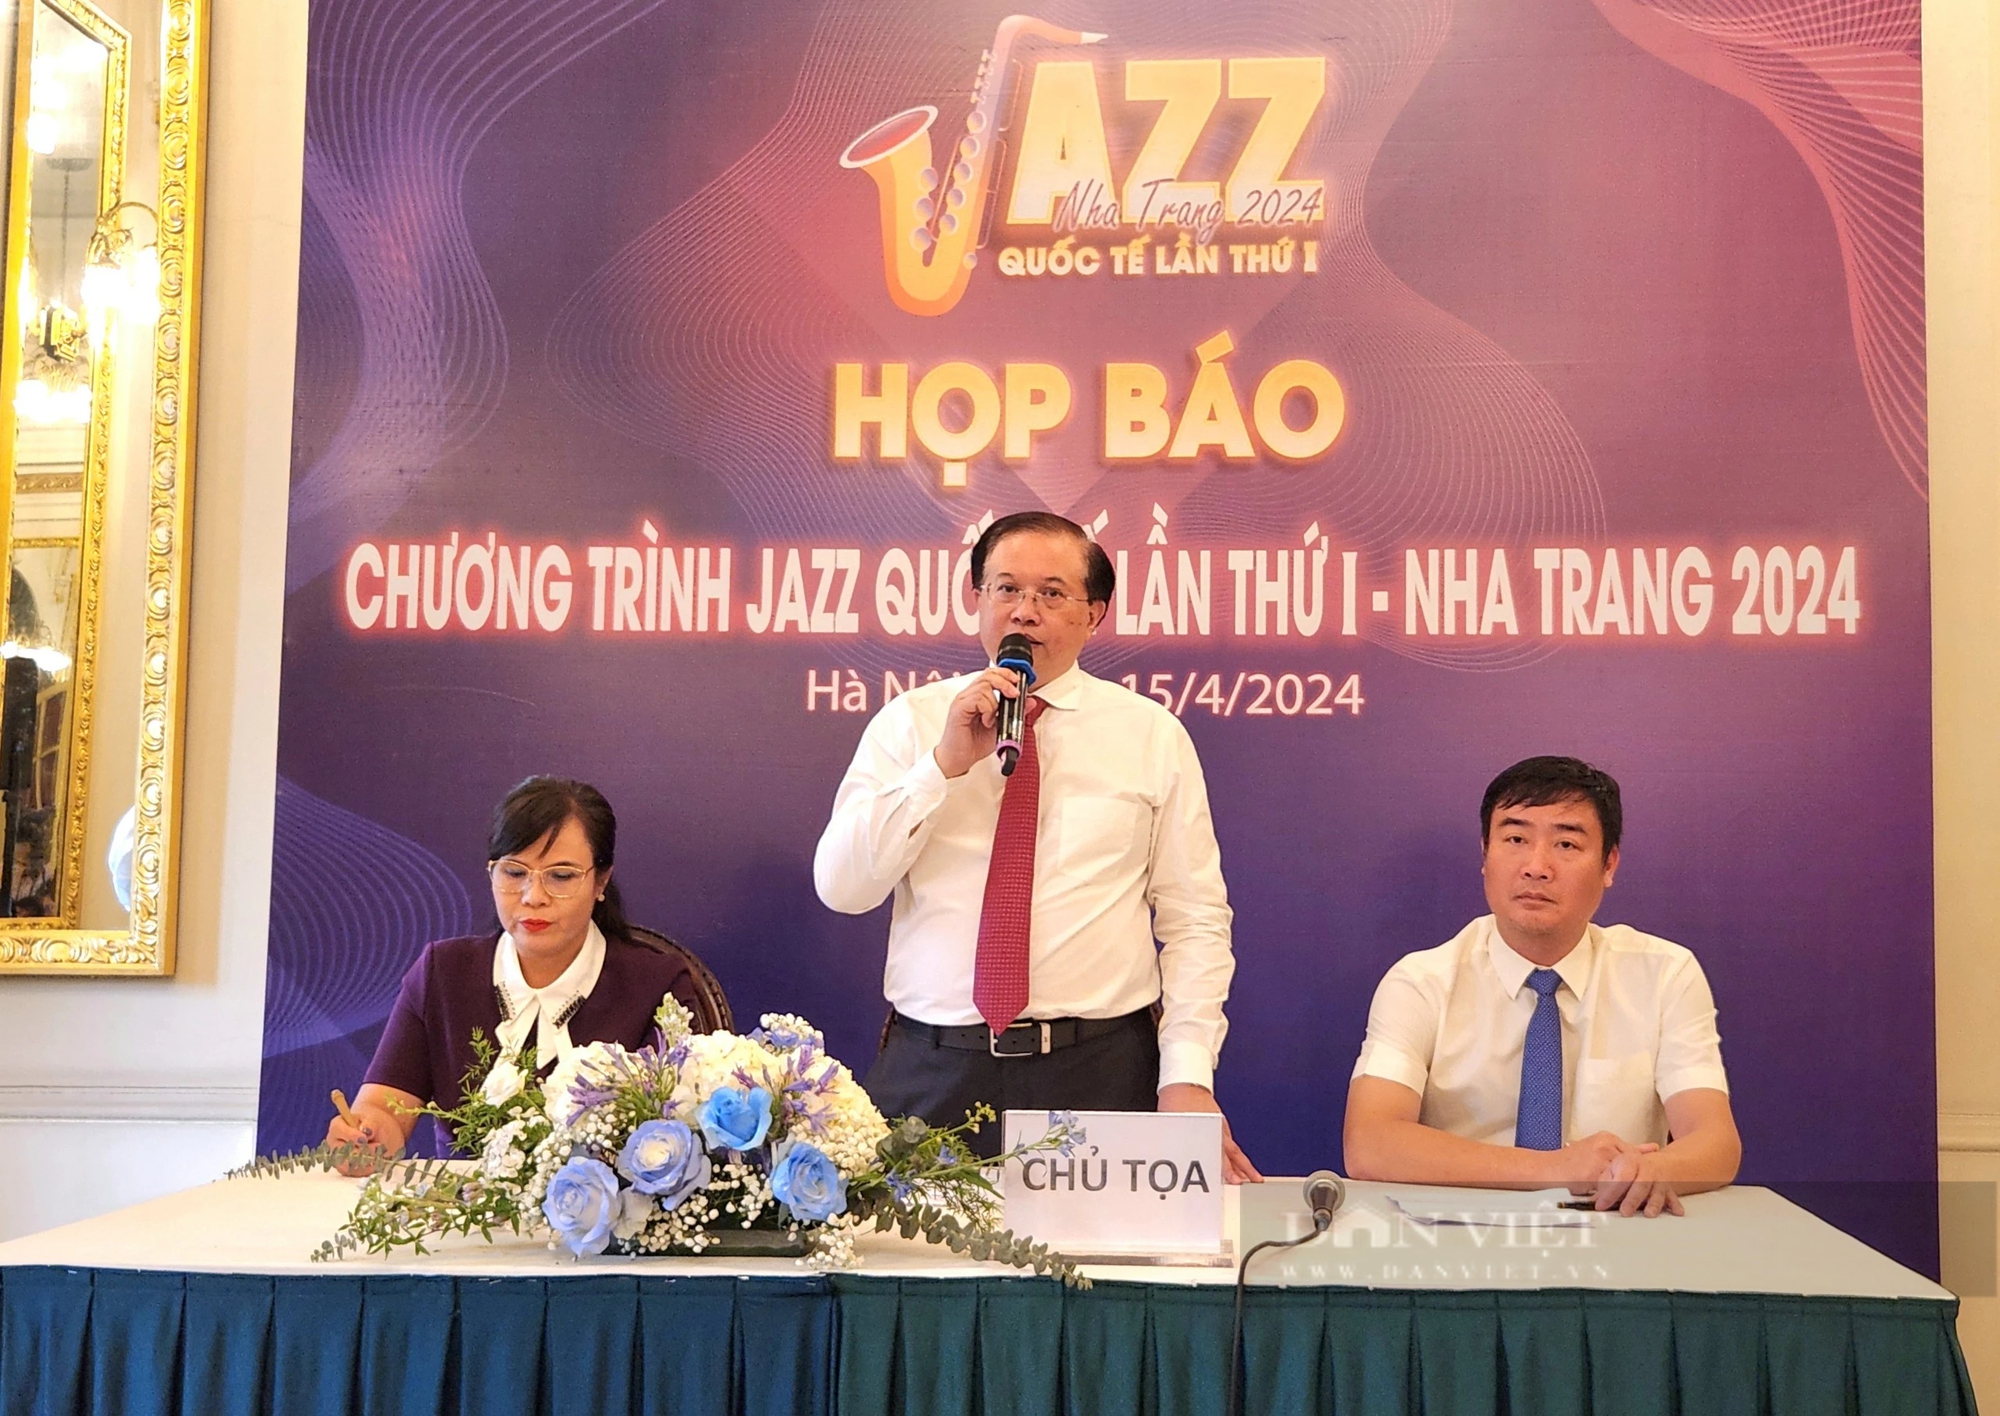 Mỹ Linh, Thu Minh cùng loạt ngôi sao nhạc Jazz quốc tế sẽ làm điều này tại Nha Trang vào tháng 4/2024- Ảnh 1.